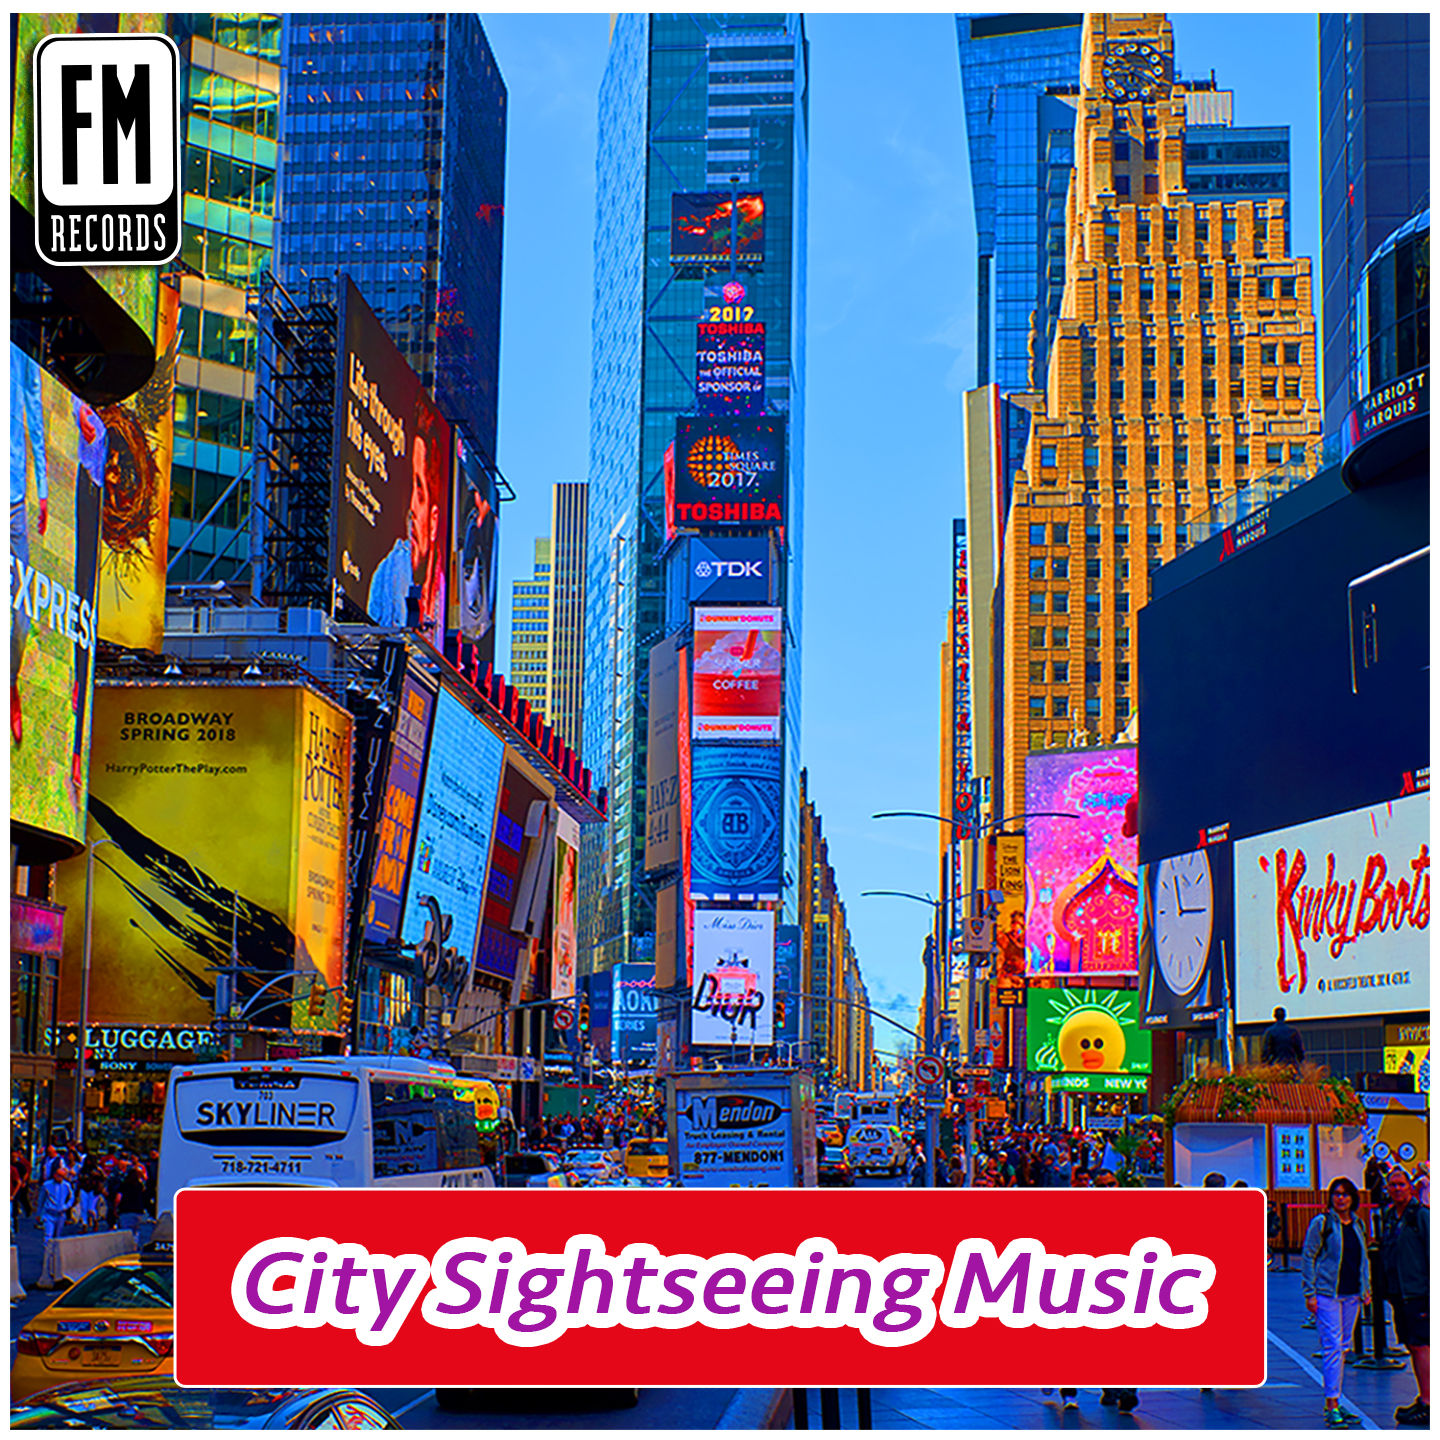 City Sightseeing Music